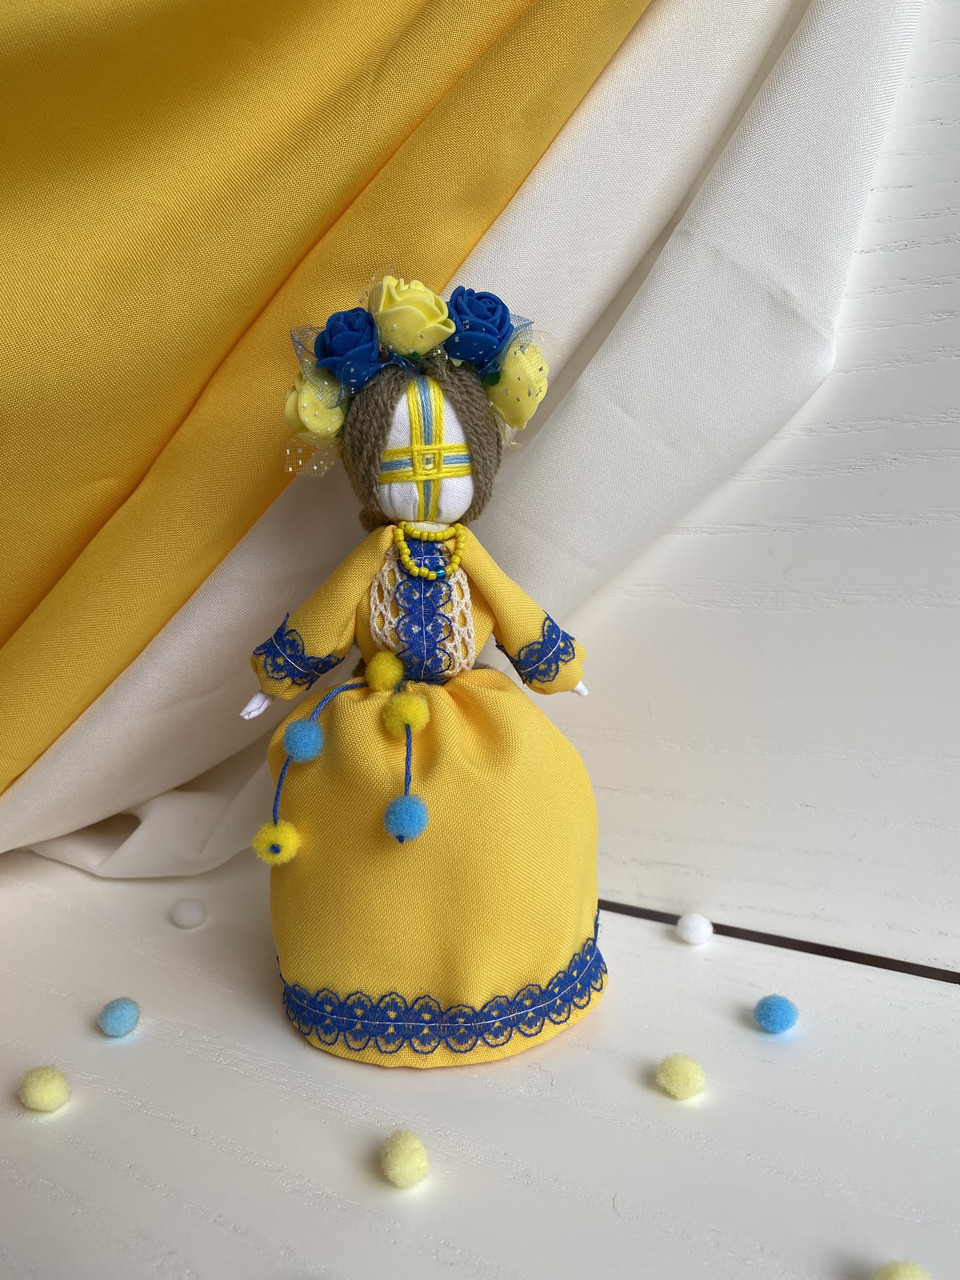 Мотанка Україночка, лялька в подарунок, лялька ручної роботи, лялька, інтер'єрна лялька, оберег, сувенір